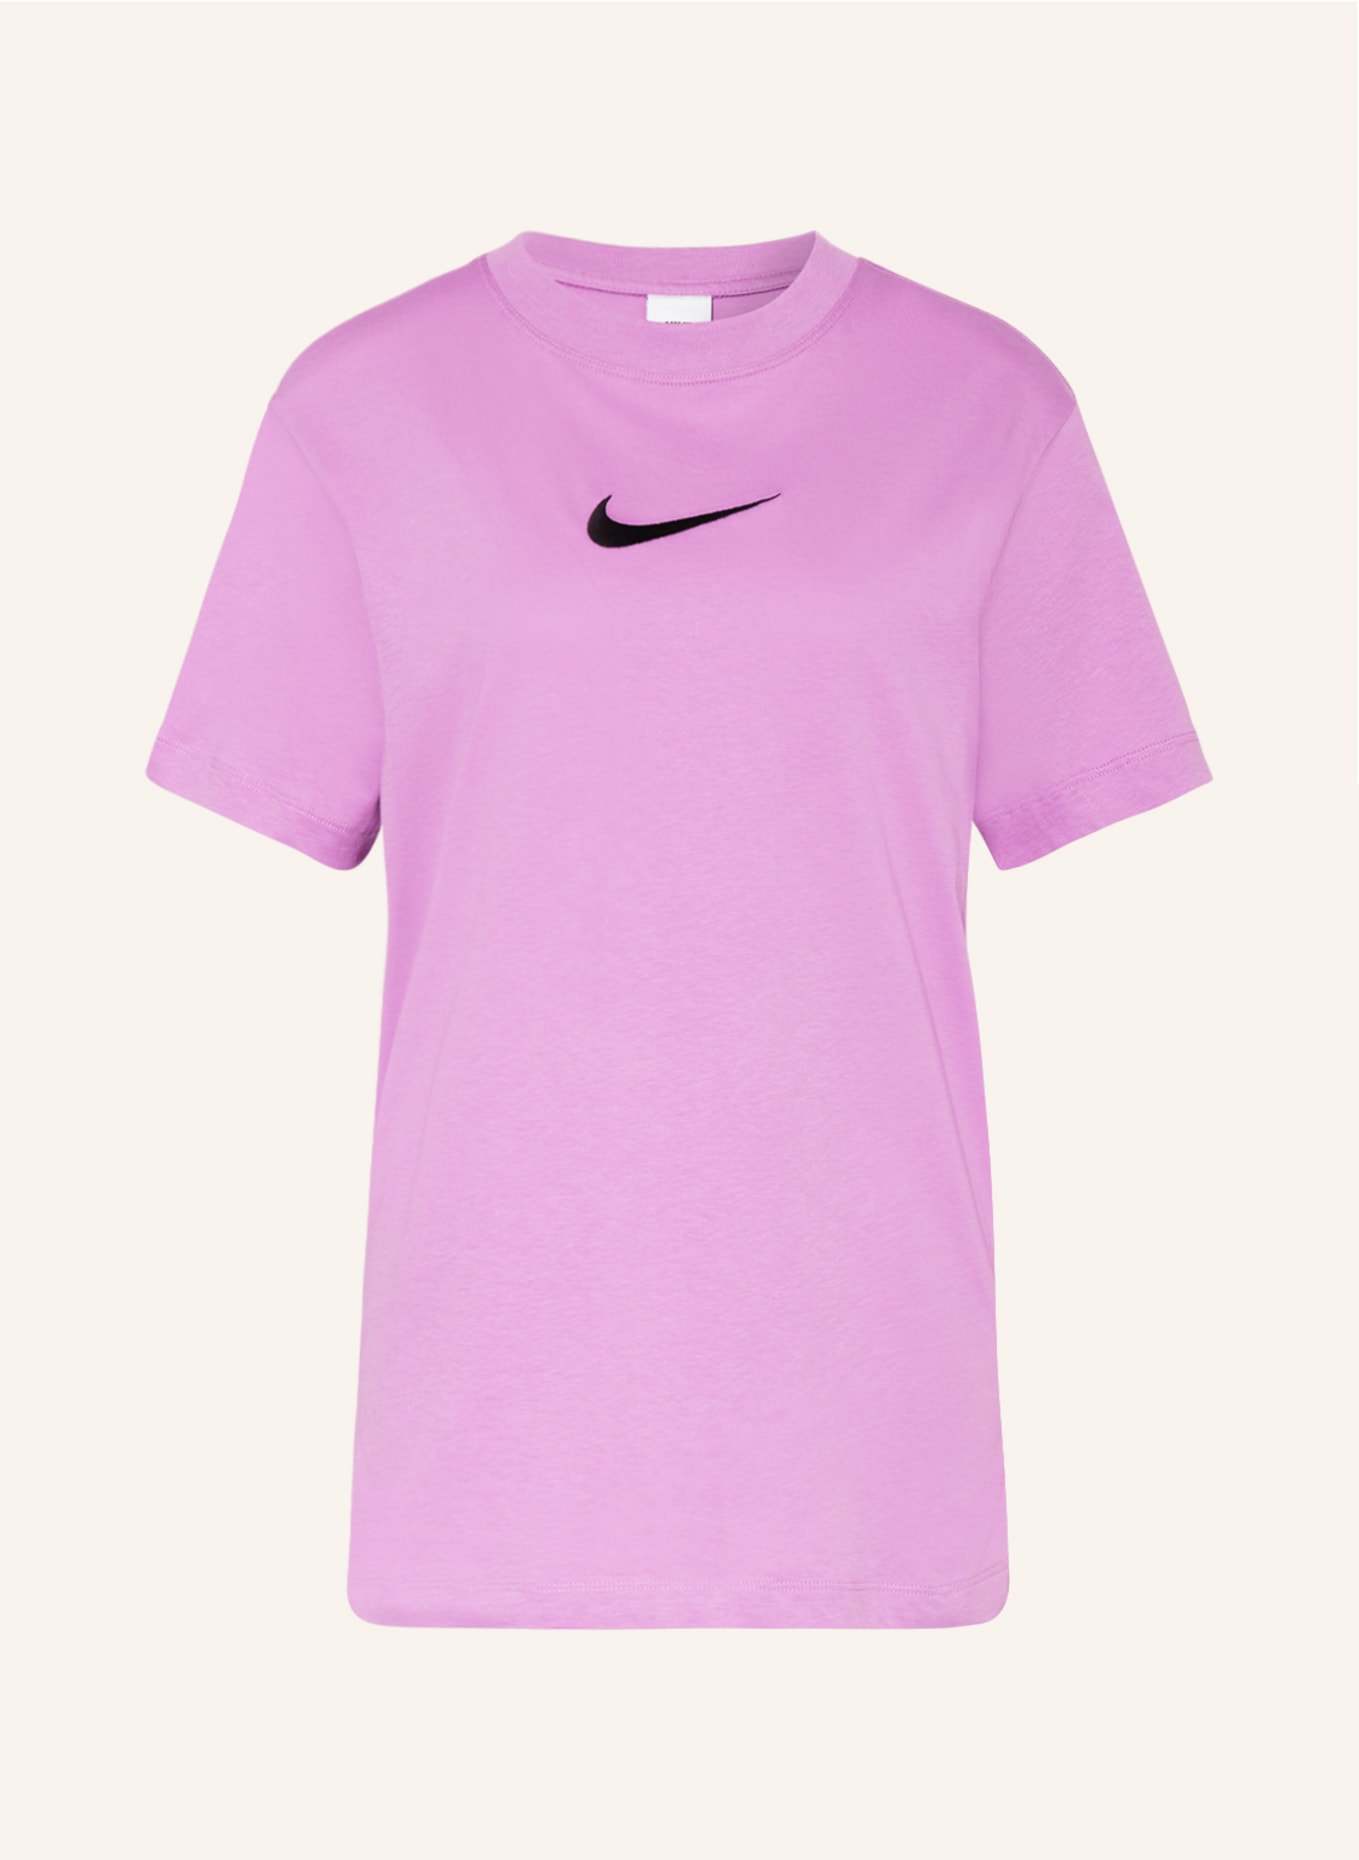 Nike T-shirt, Color: LIGHT PURPLE (Image 1)